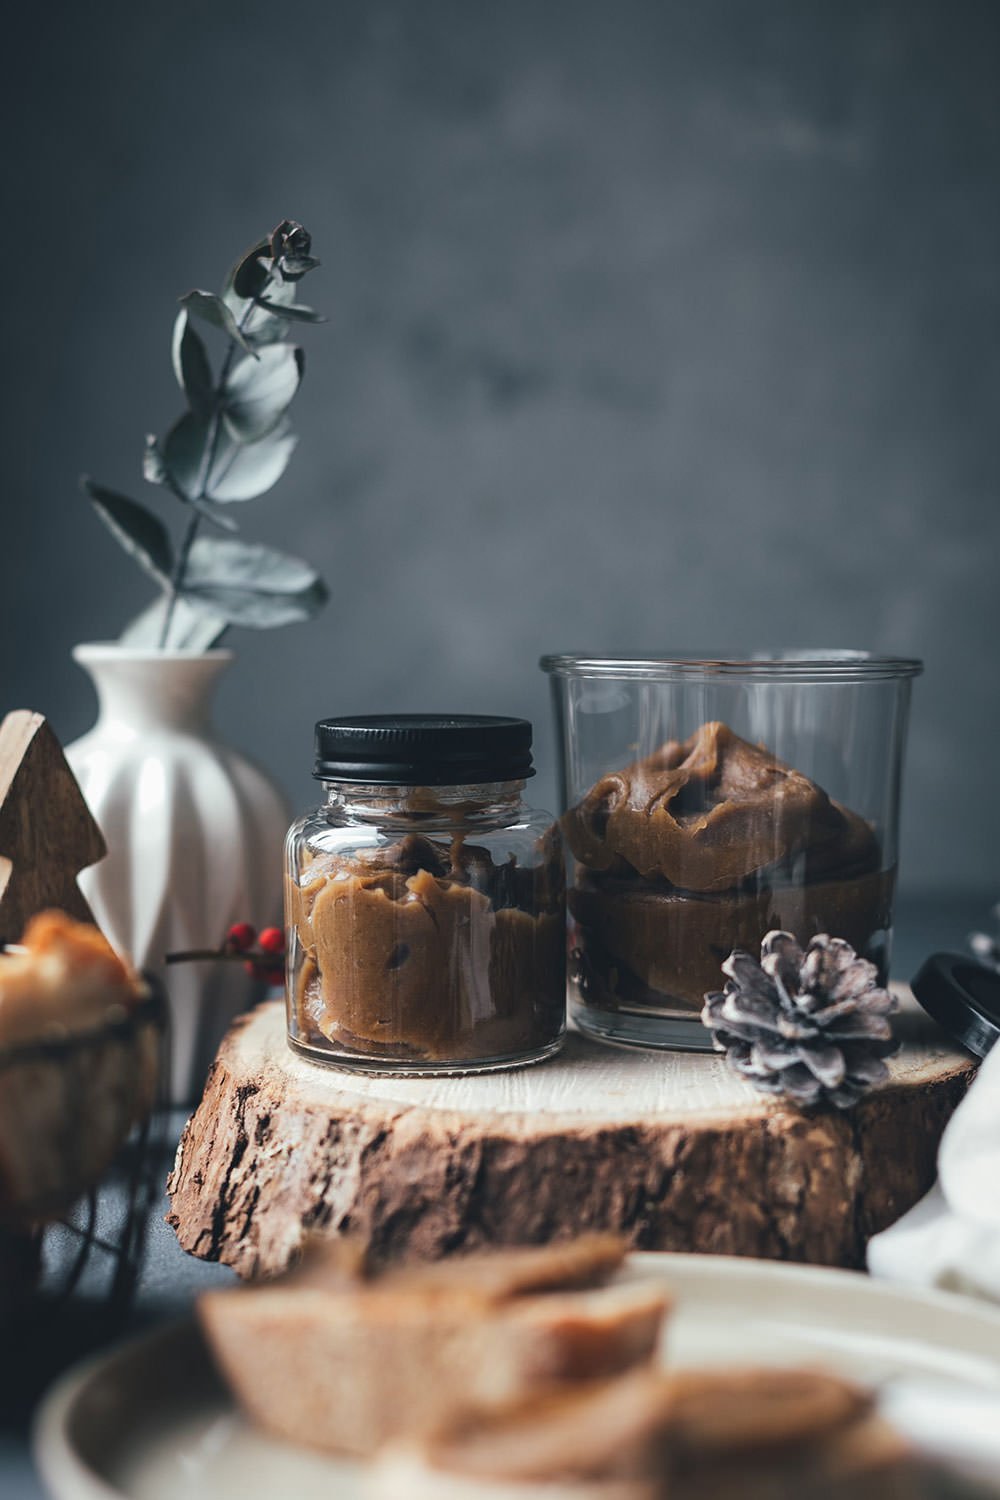 Maronencreme mit Ahornsirup – Geschenke aus der Küche